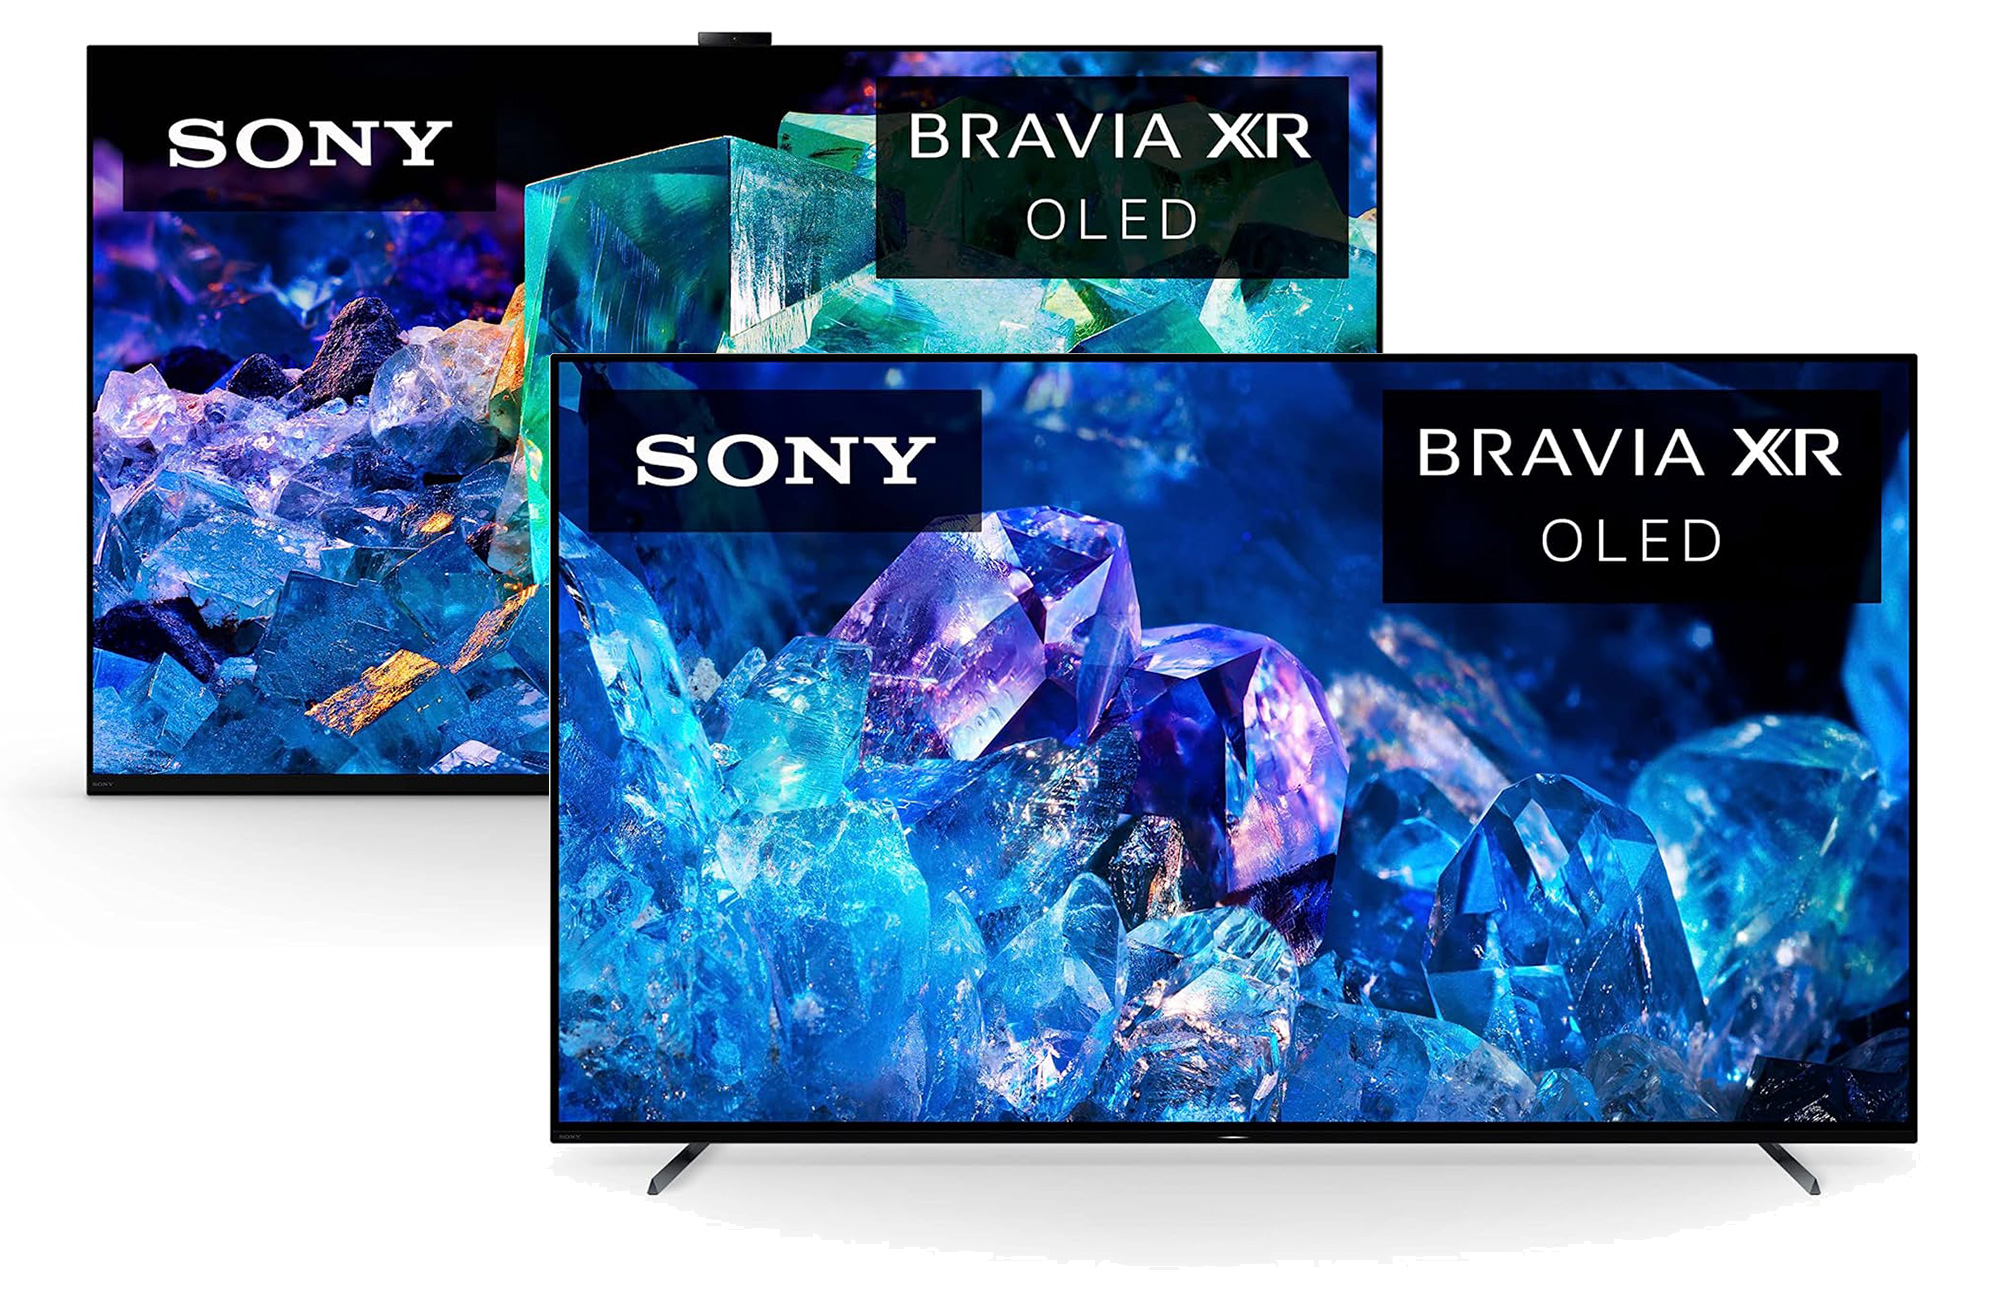 Prime Day Lightning Deal: 65 Sony Bravia 4K OLED TV for